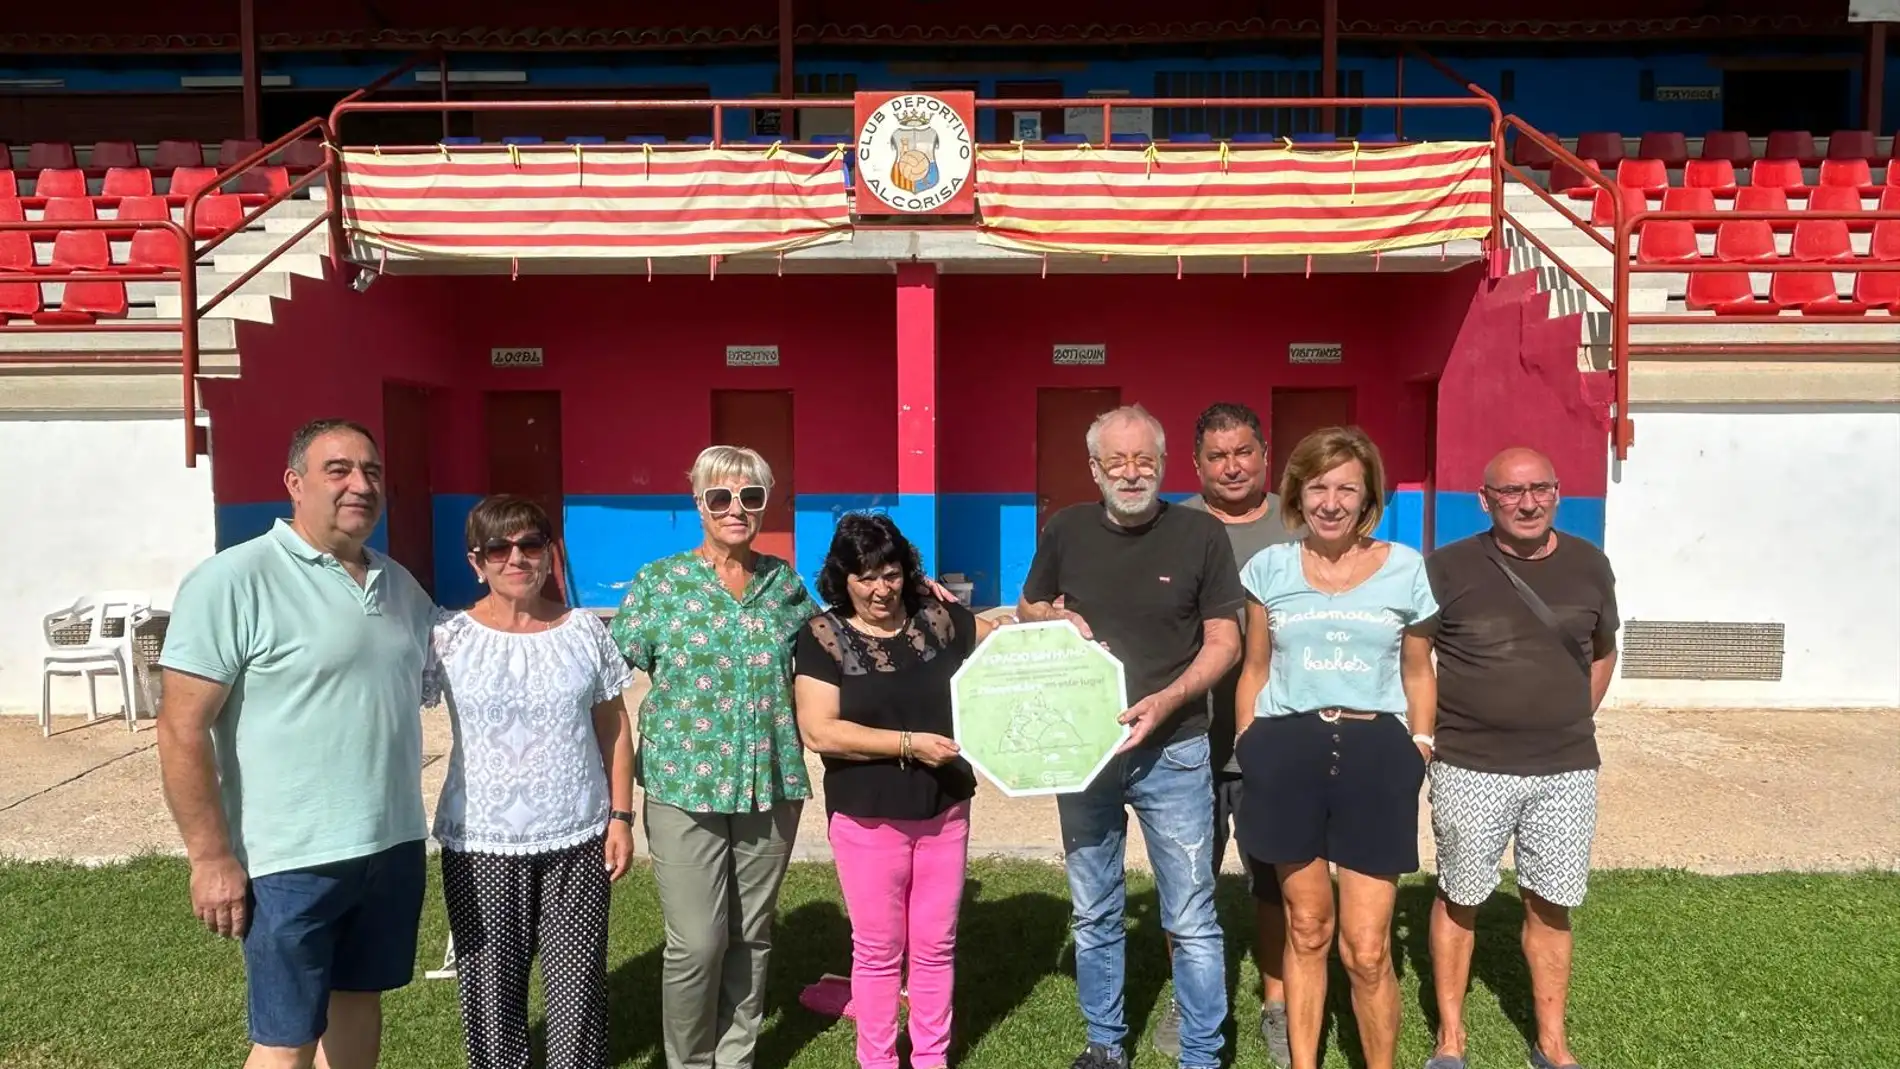 El campo de fútbol de Alcorisa ha sido declarado oficialmente "Espacio libre de humo"